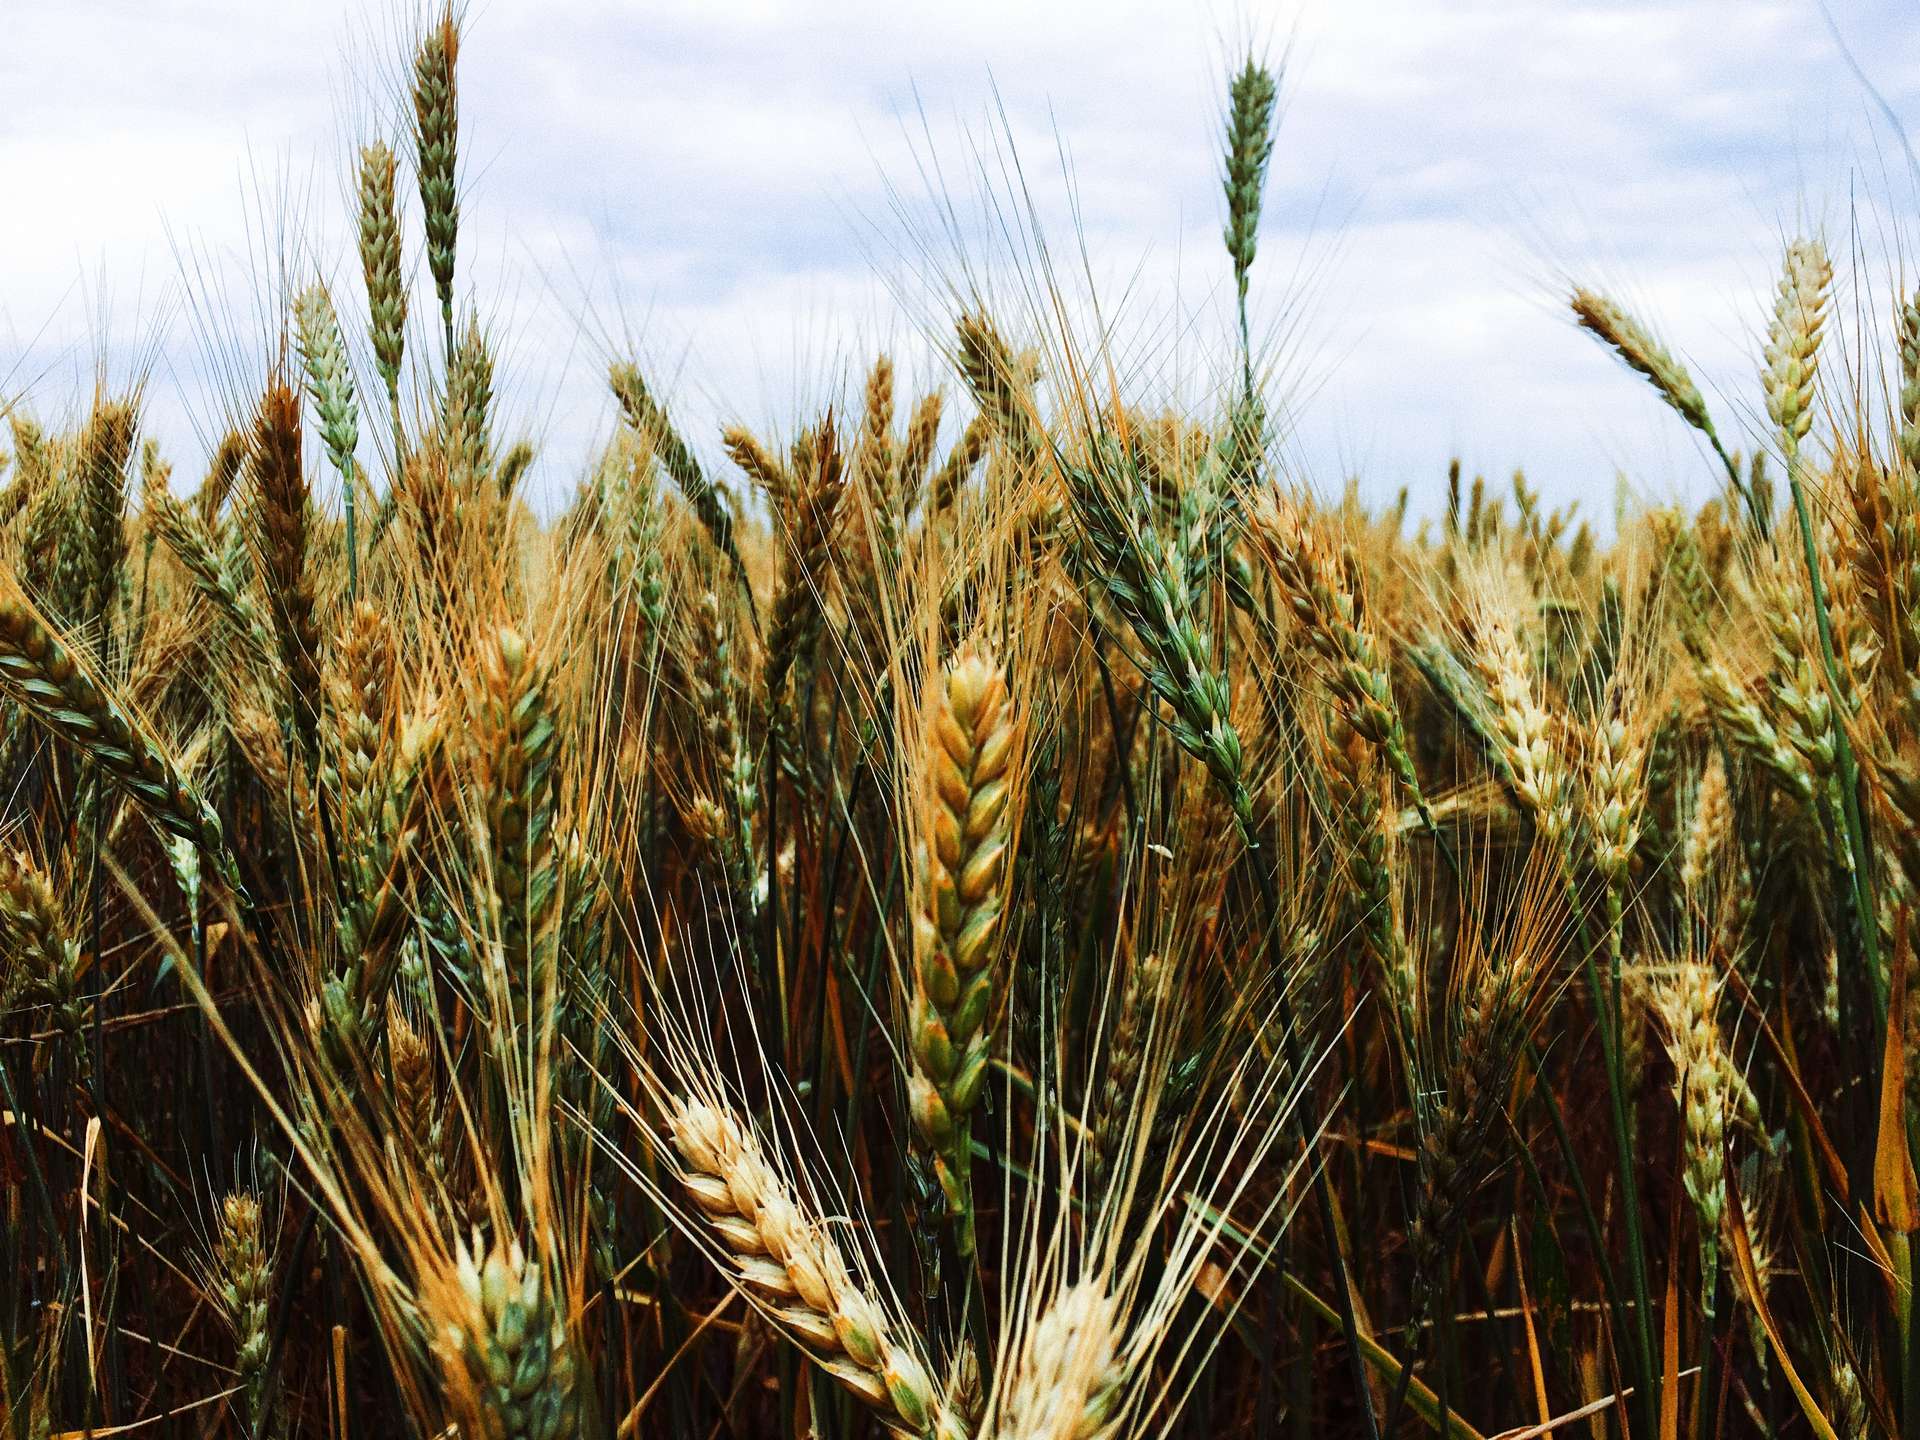 Wheat ears of grain. Photographer: Igor Karimov. Licensed (3kjf-VEhxkg)